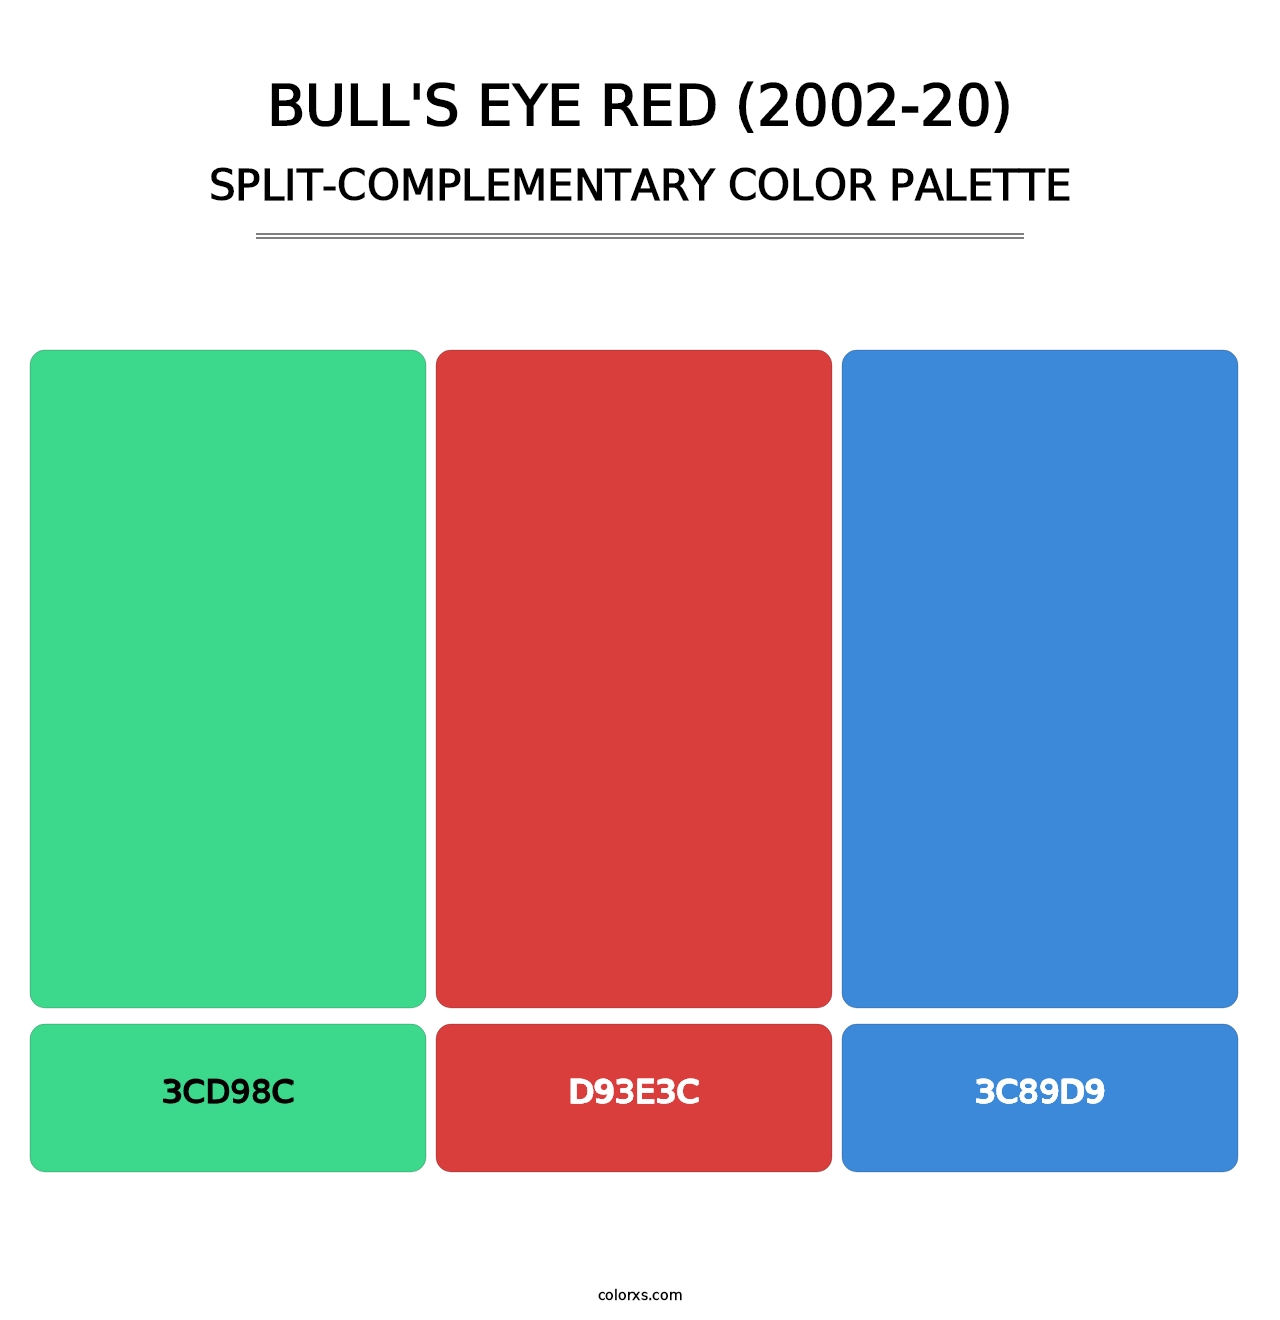 Bull's Eye Red (2002-20) - Split-Complementary Color Palette